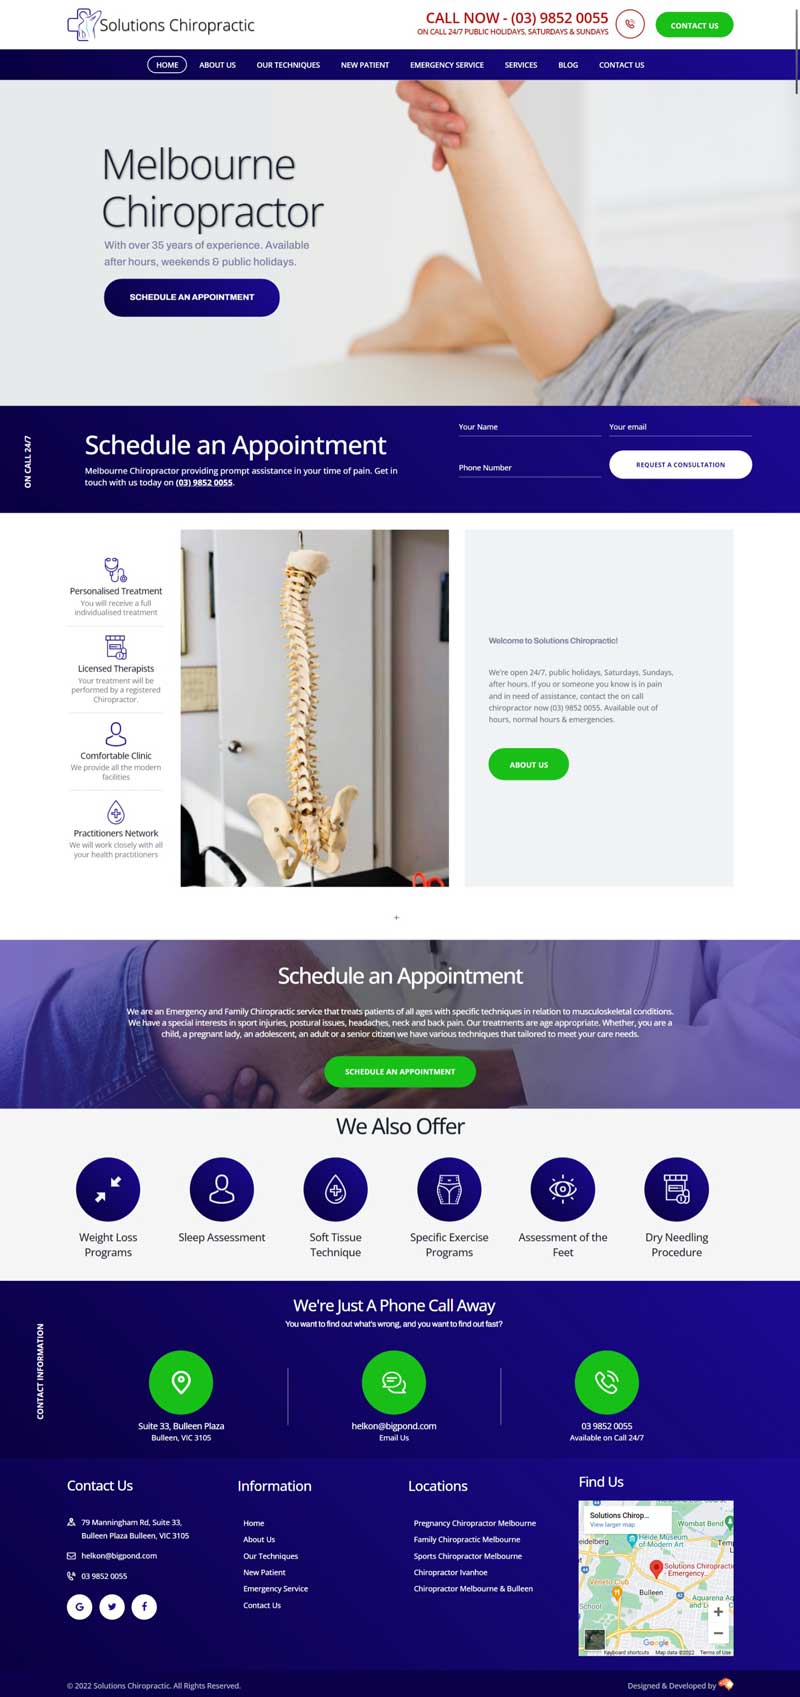 Solutions Chiro homepage